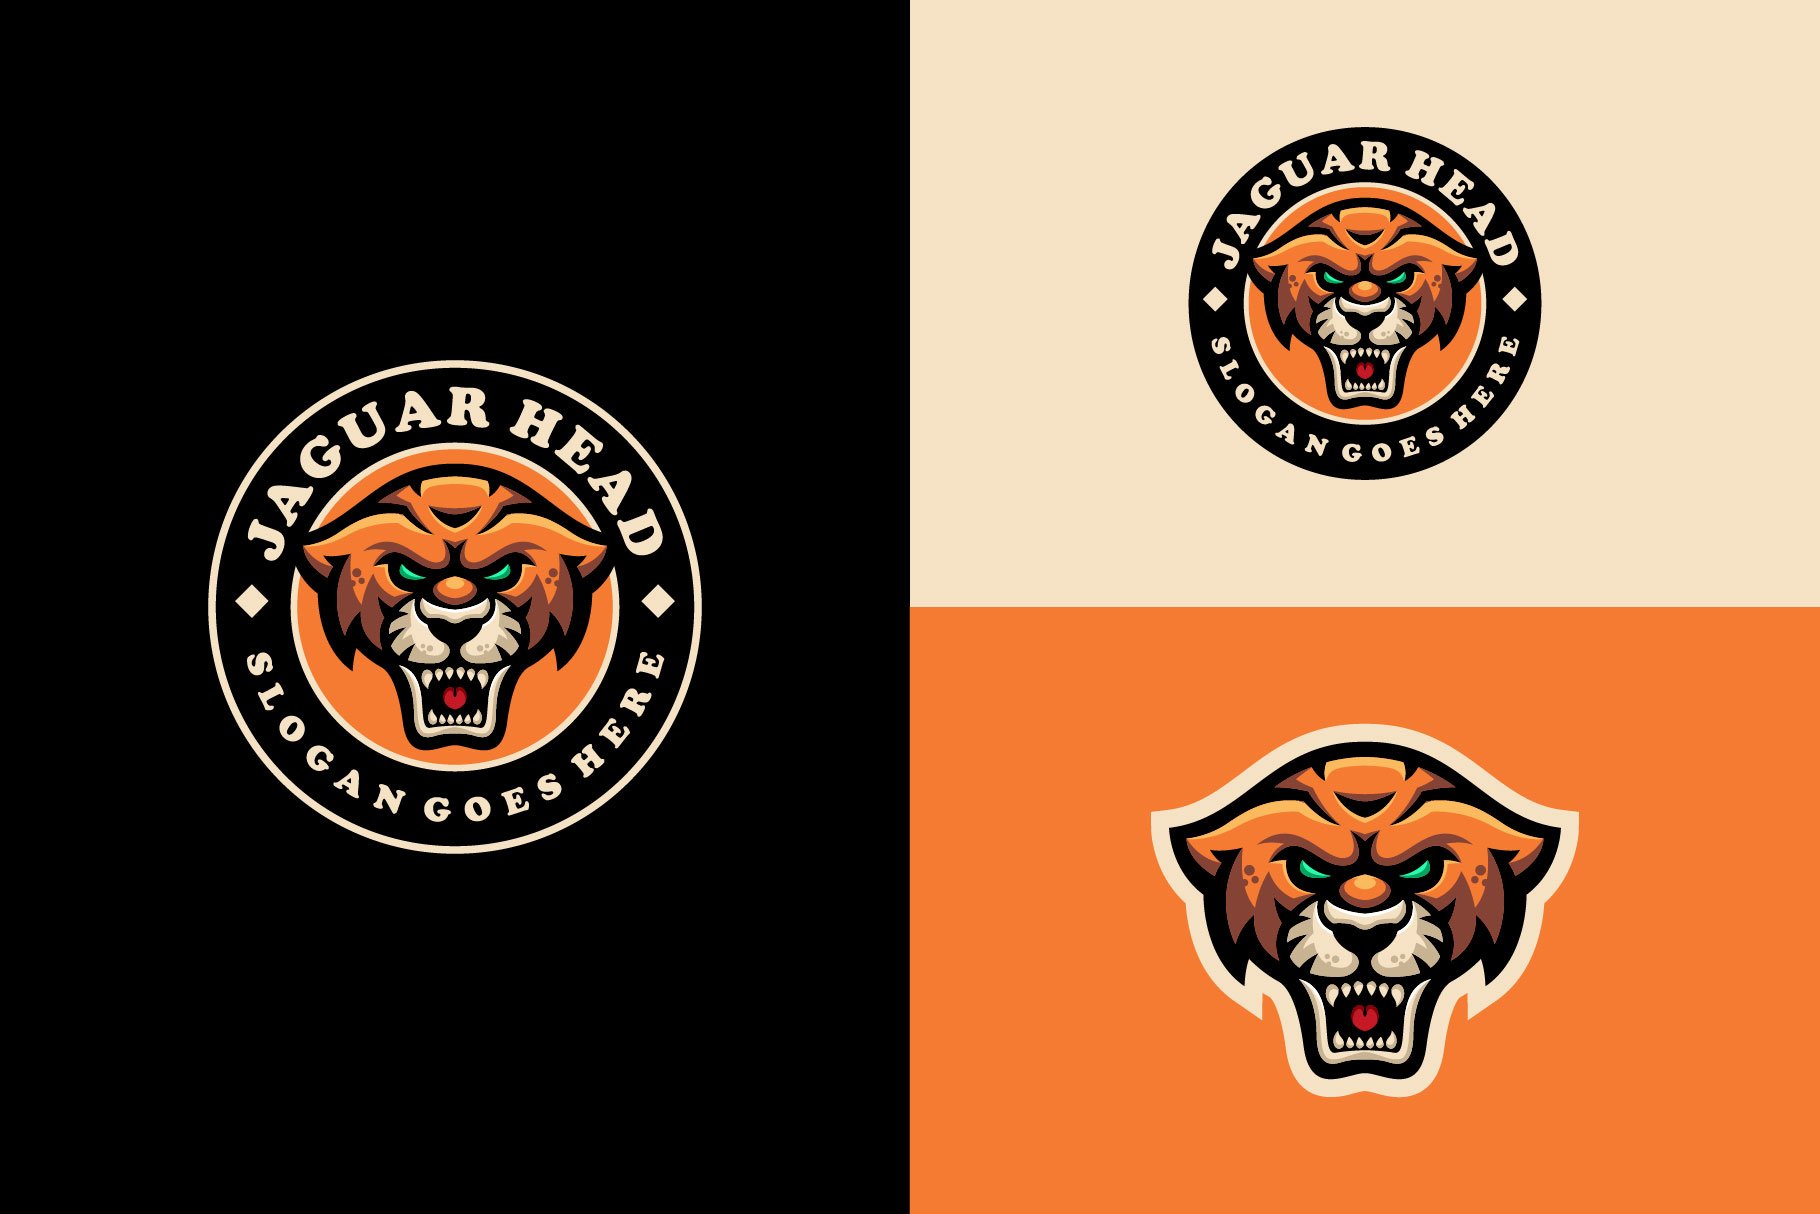 Jaguar Leopard  Emblem Mascot logo cover image.